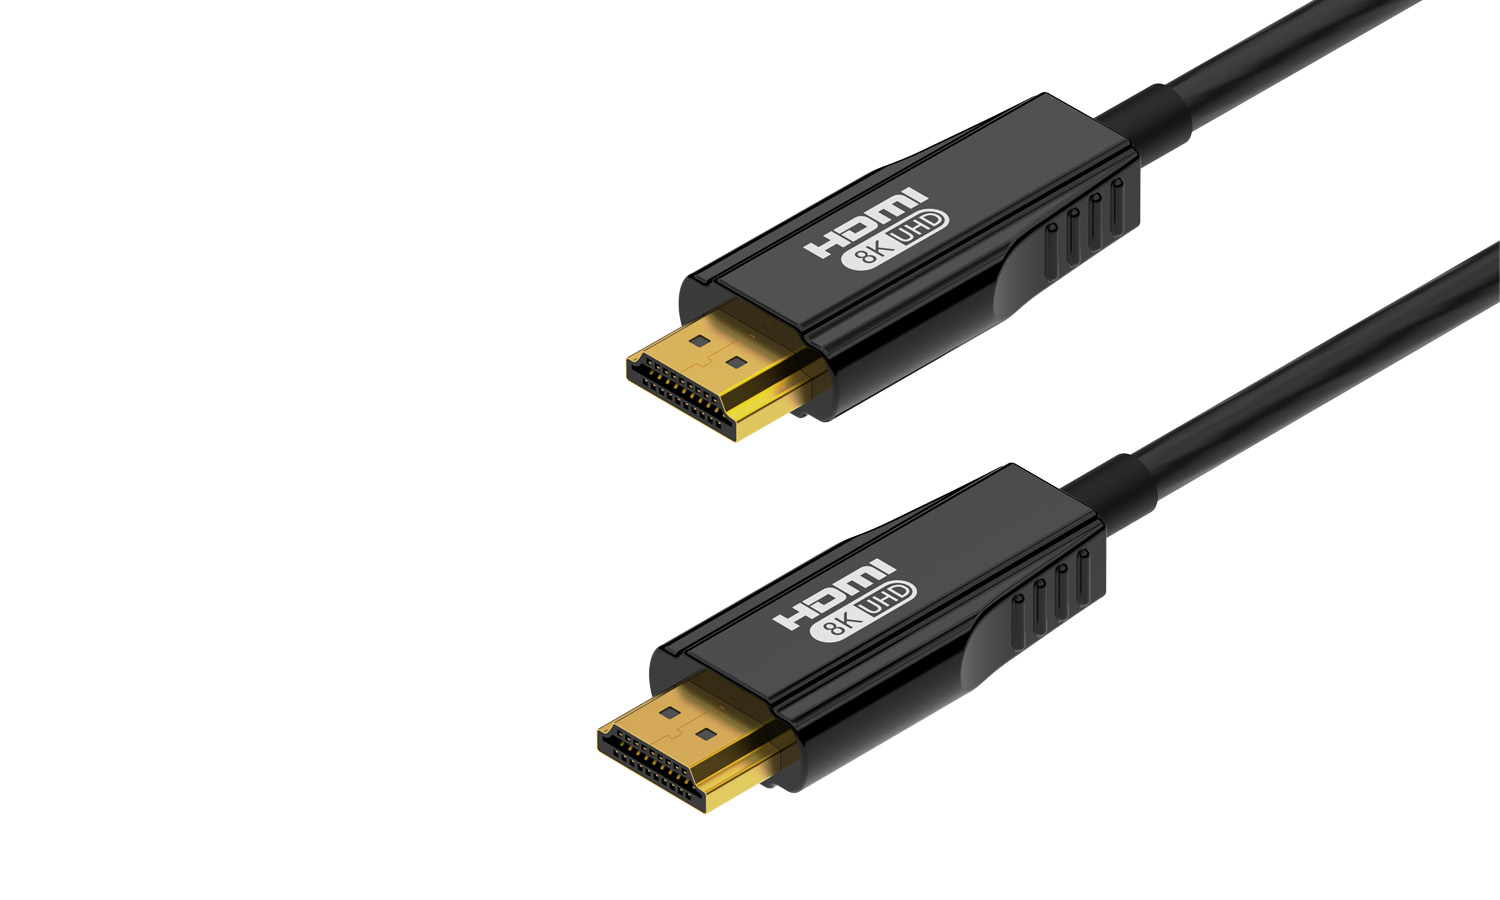 10m - 4K HDMI 2 0V - câble HDMI 4k 2.0 8K 2.1 vers HDMI, Support